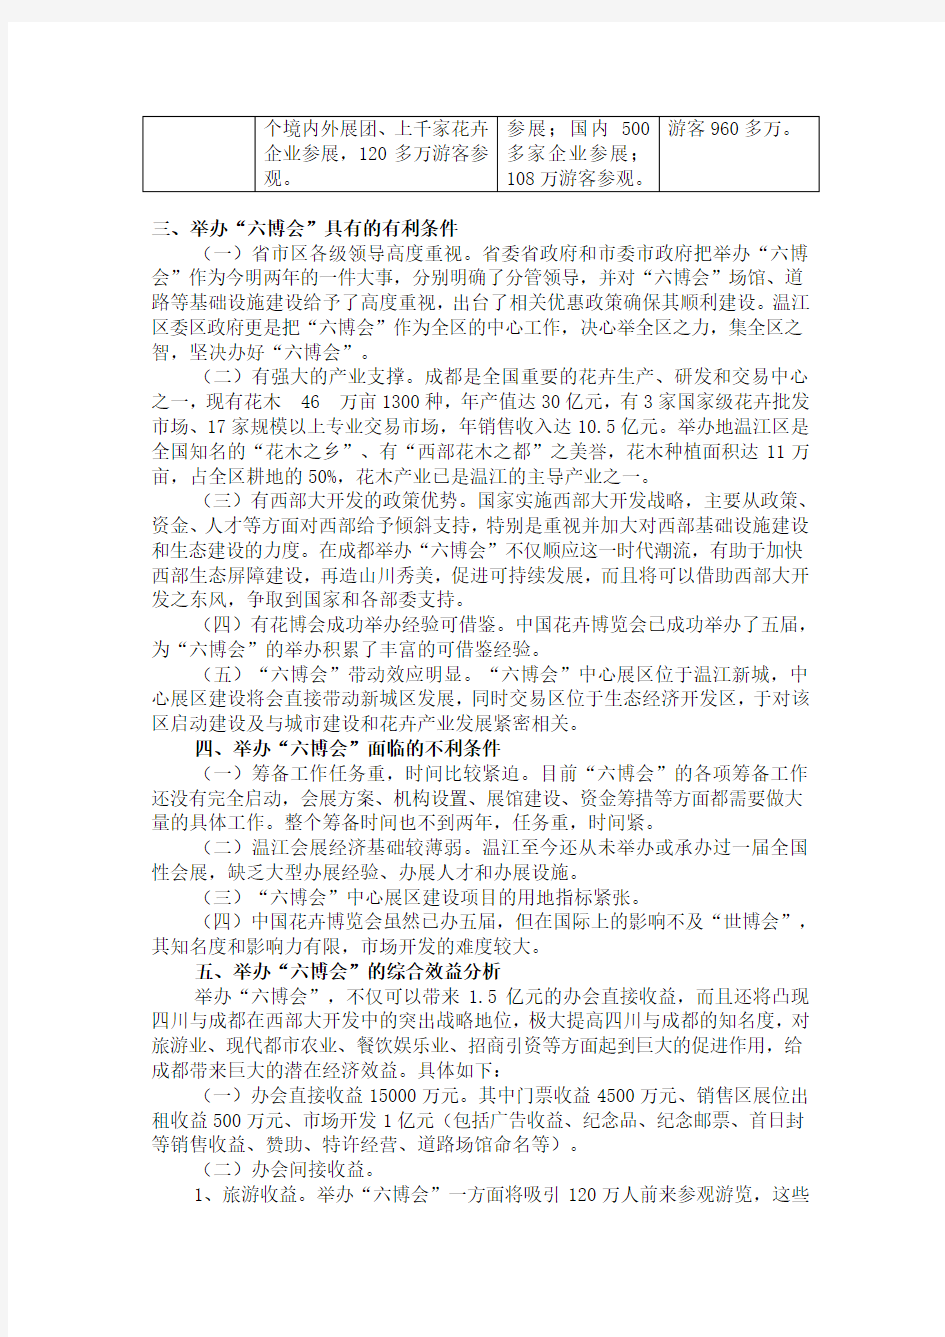 中国花卉博览会总体项目策划方案 PDF